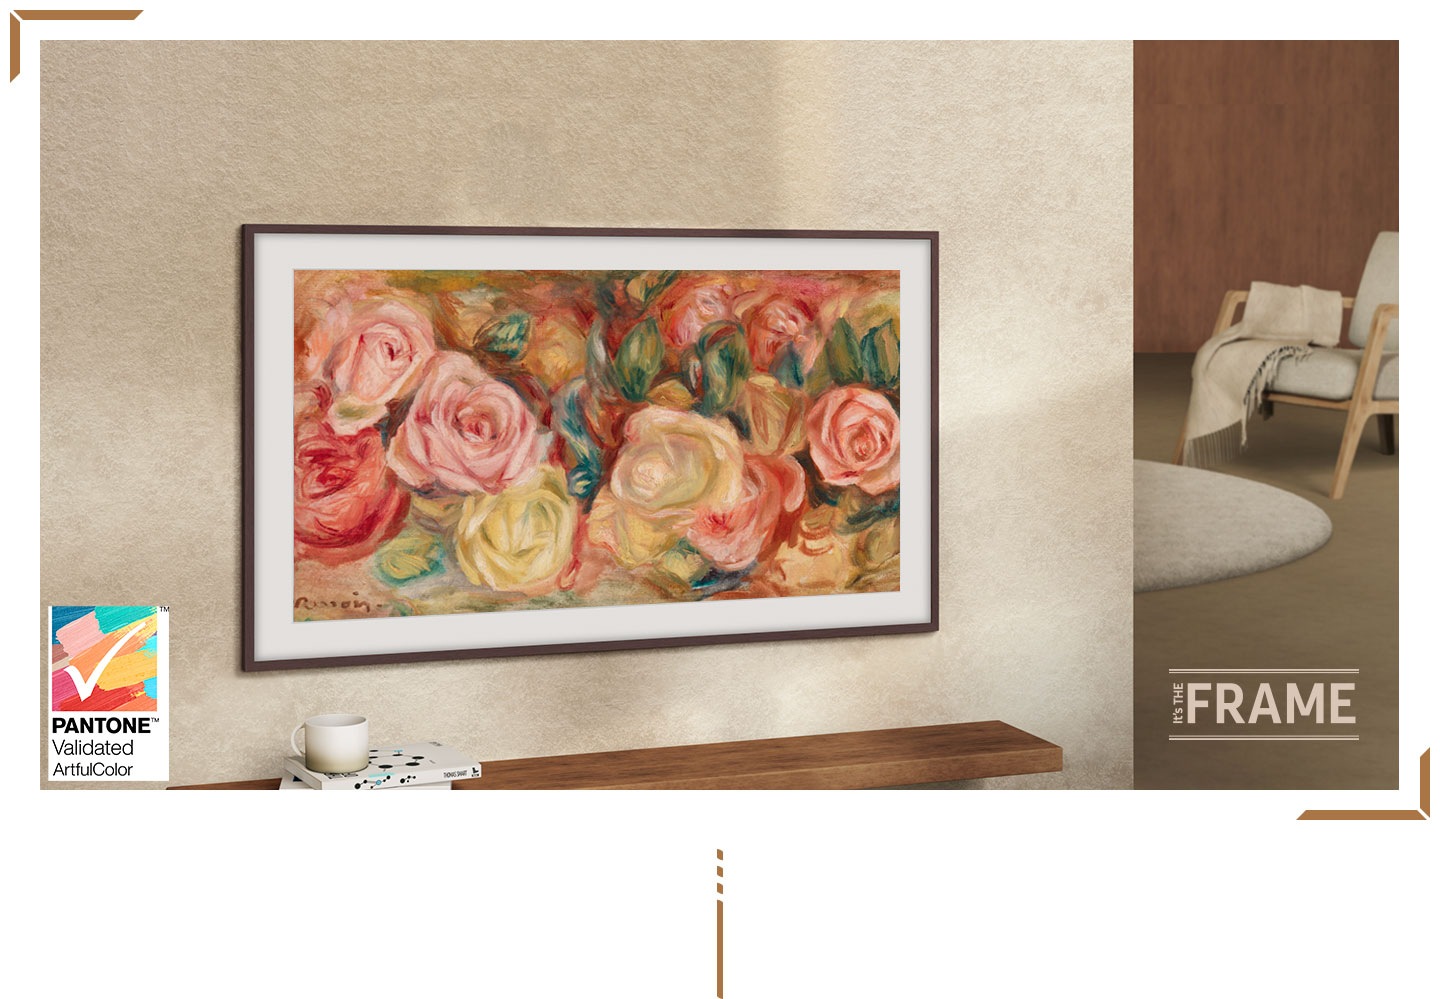 Televizor Frame je umístěn na stěně. Obrazovka ukazuje malbu růží. Logo s nápisem It's The Frame a certifikační známkou PANTONE Validated.